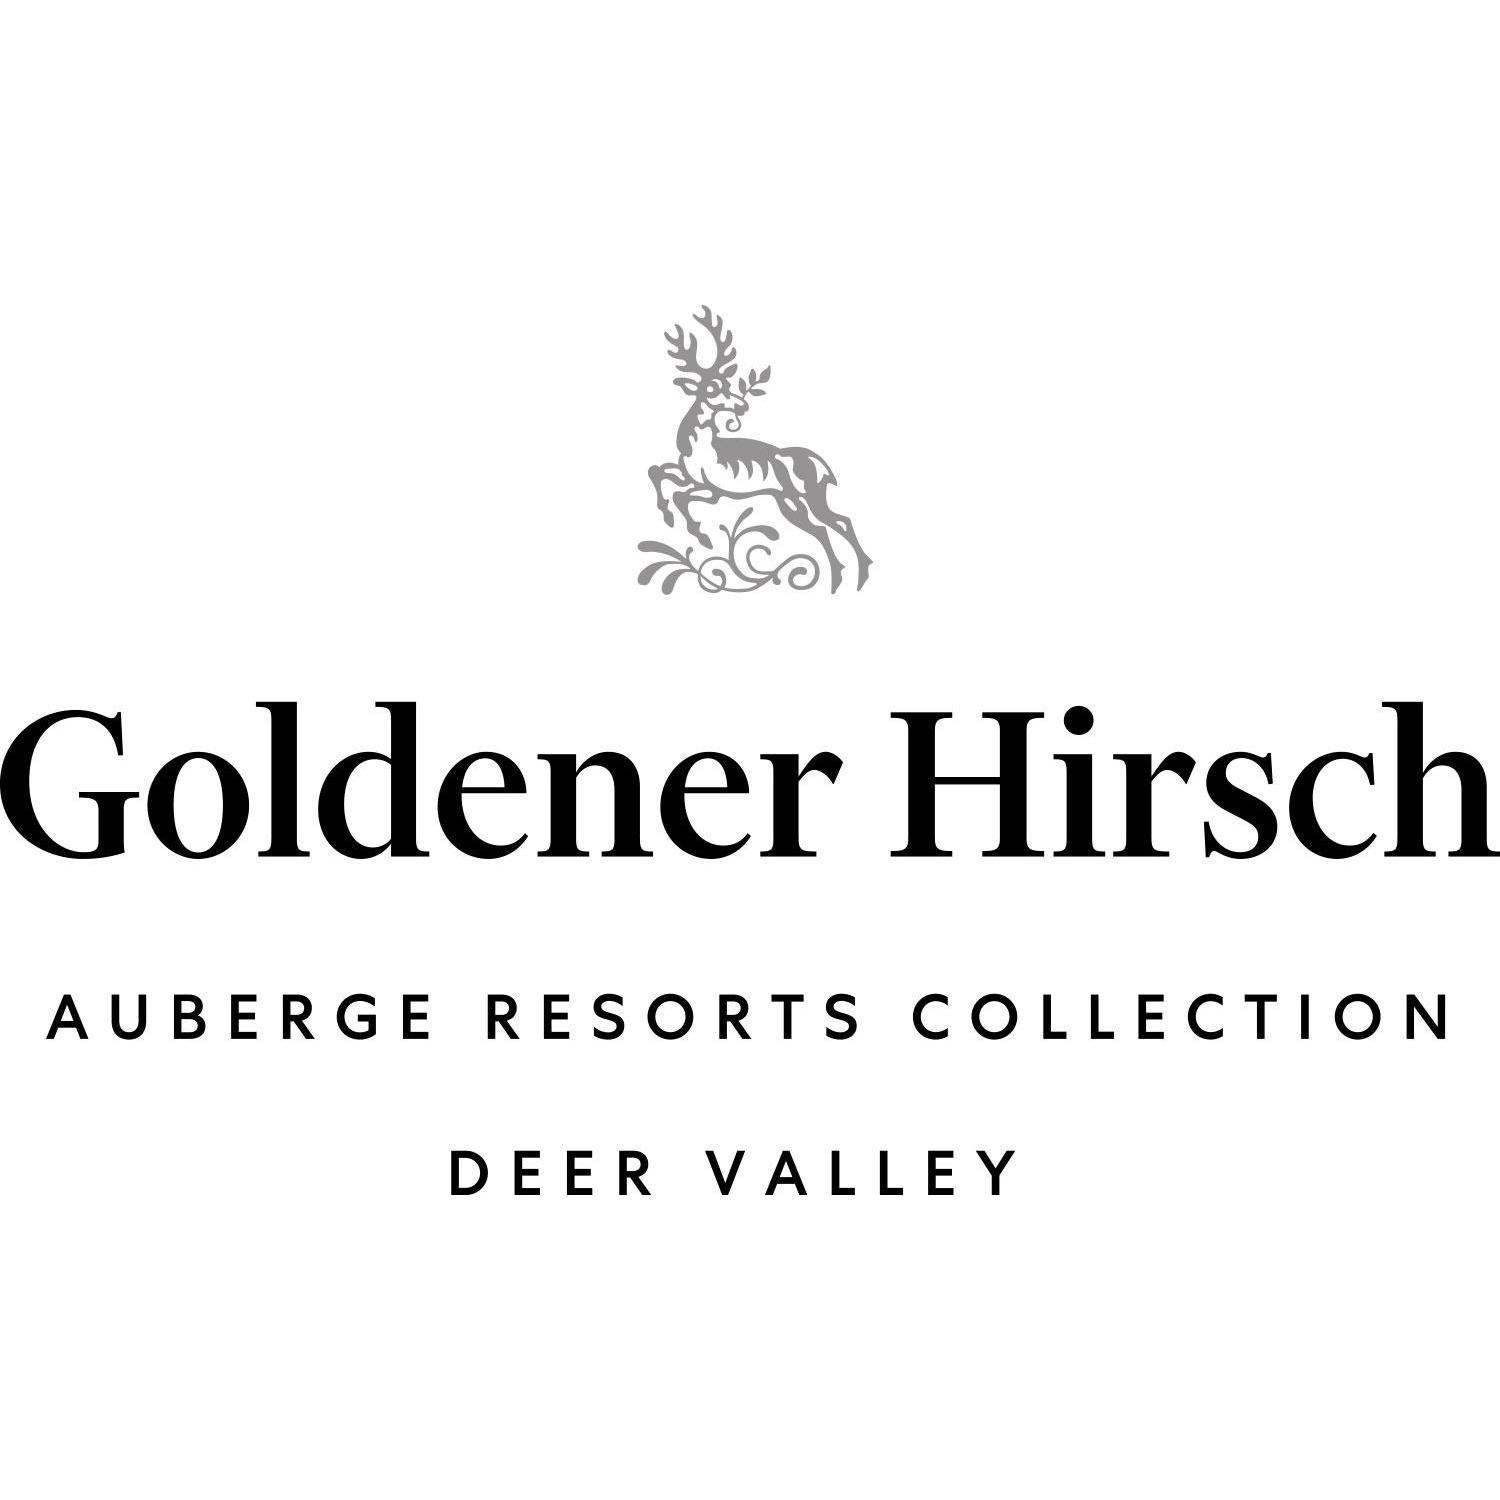 Goldener Hirsch, Auberge Resorts Collection